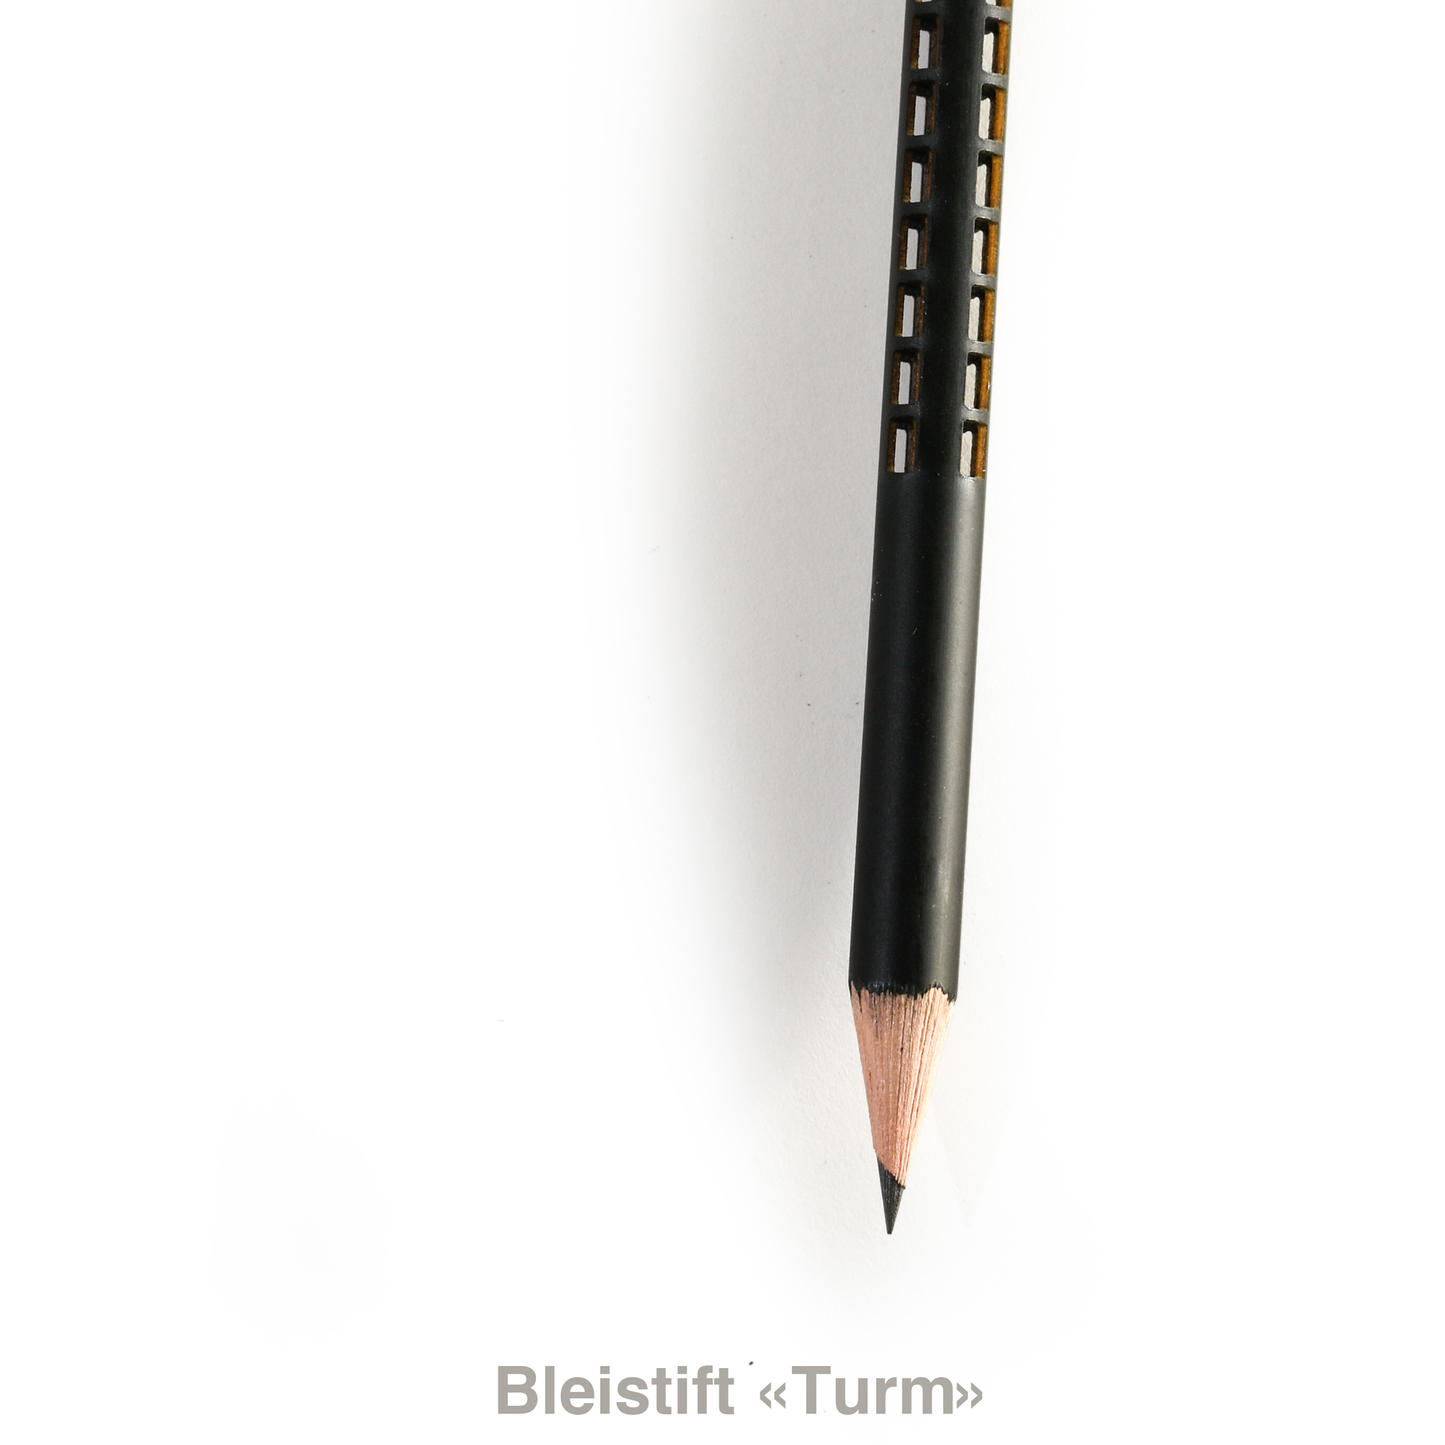 tät-tat - Bleistifte / Pencils 6 pieces